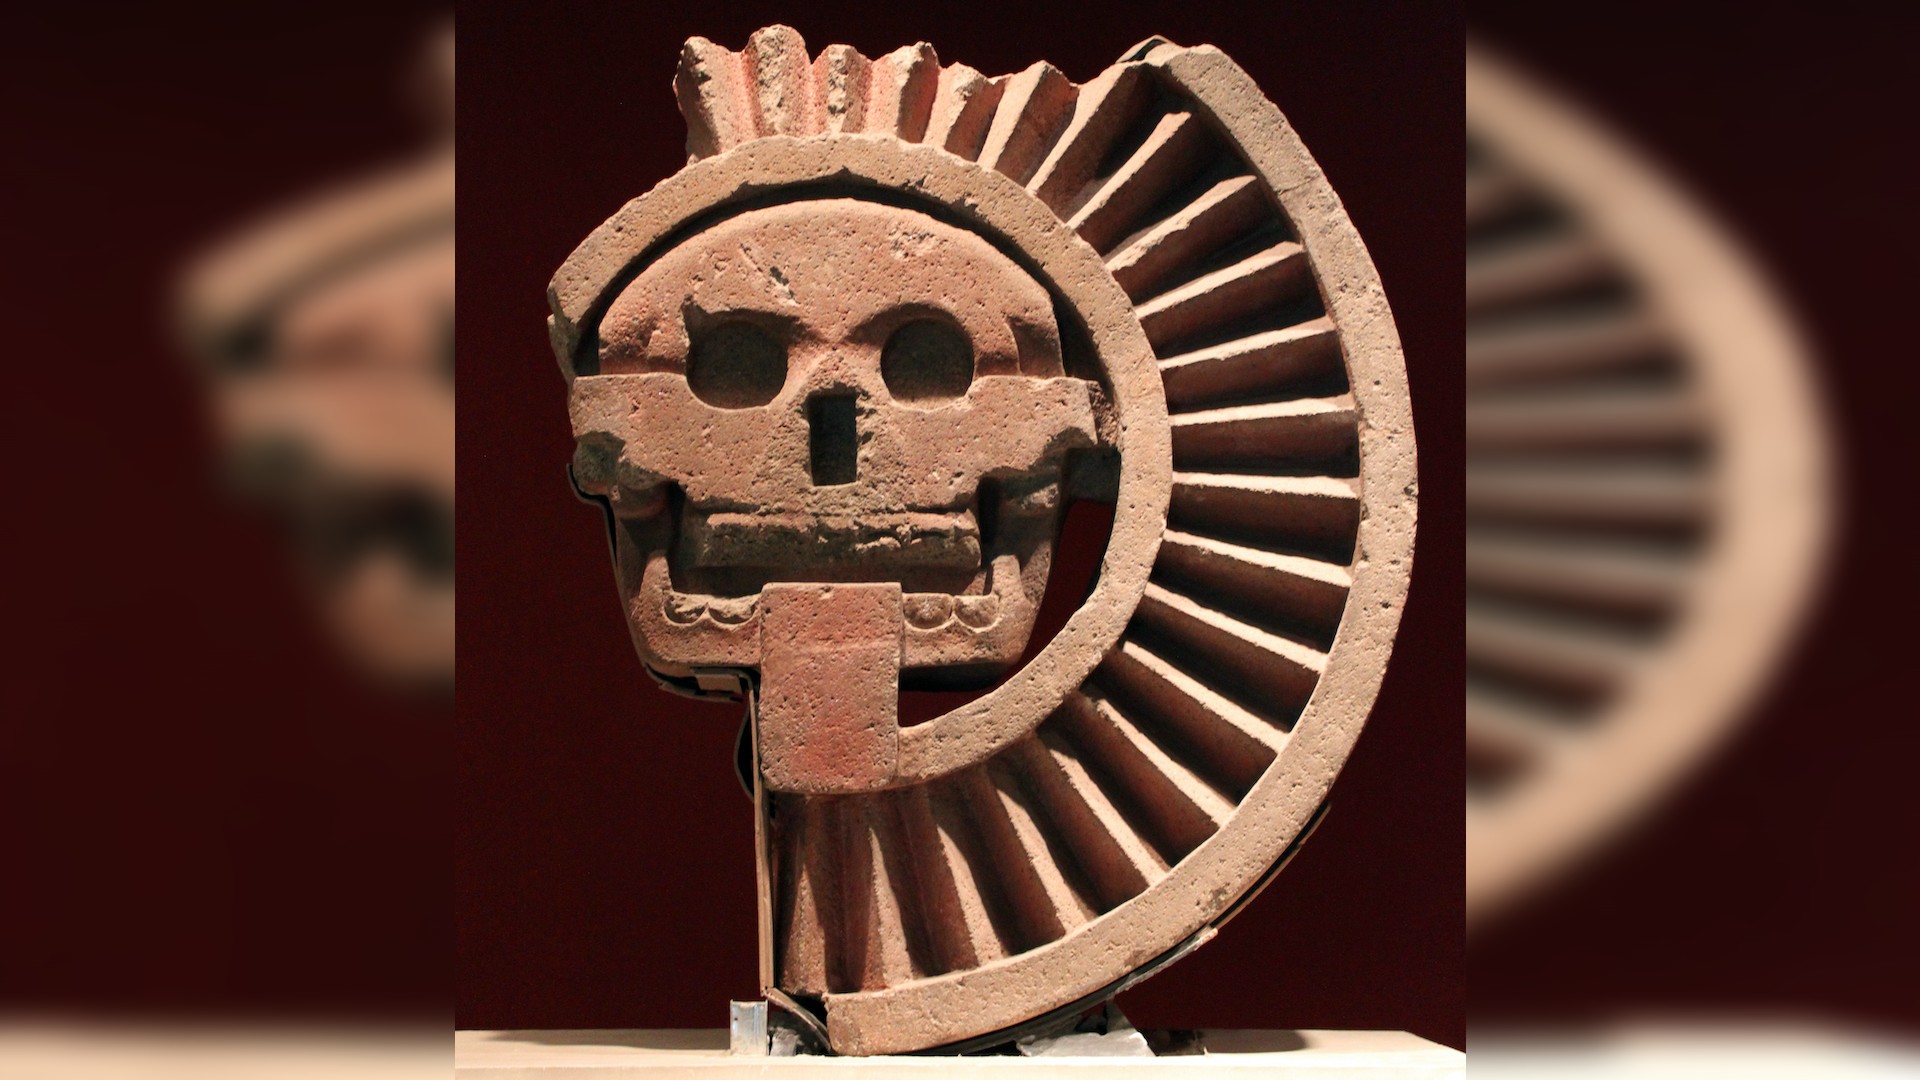 Mictecacihuatl’s underworld husband, Mictlantecuhtli, was also depicted in skeletal form.